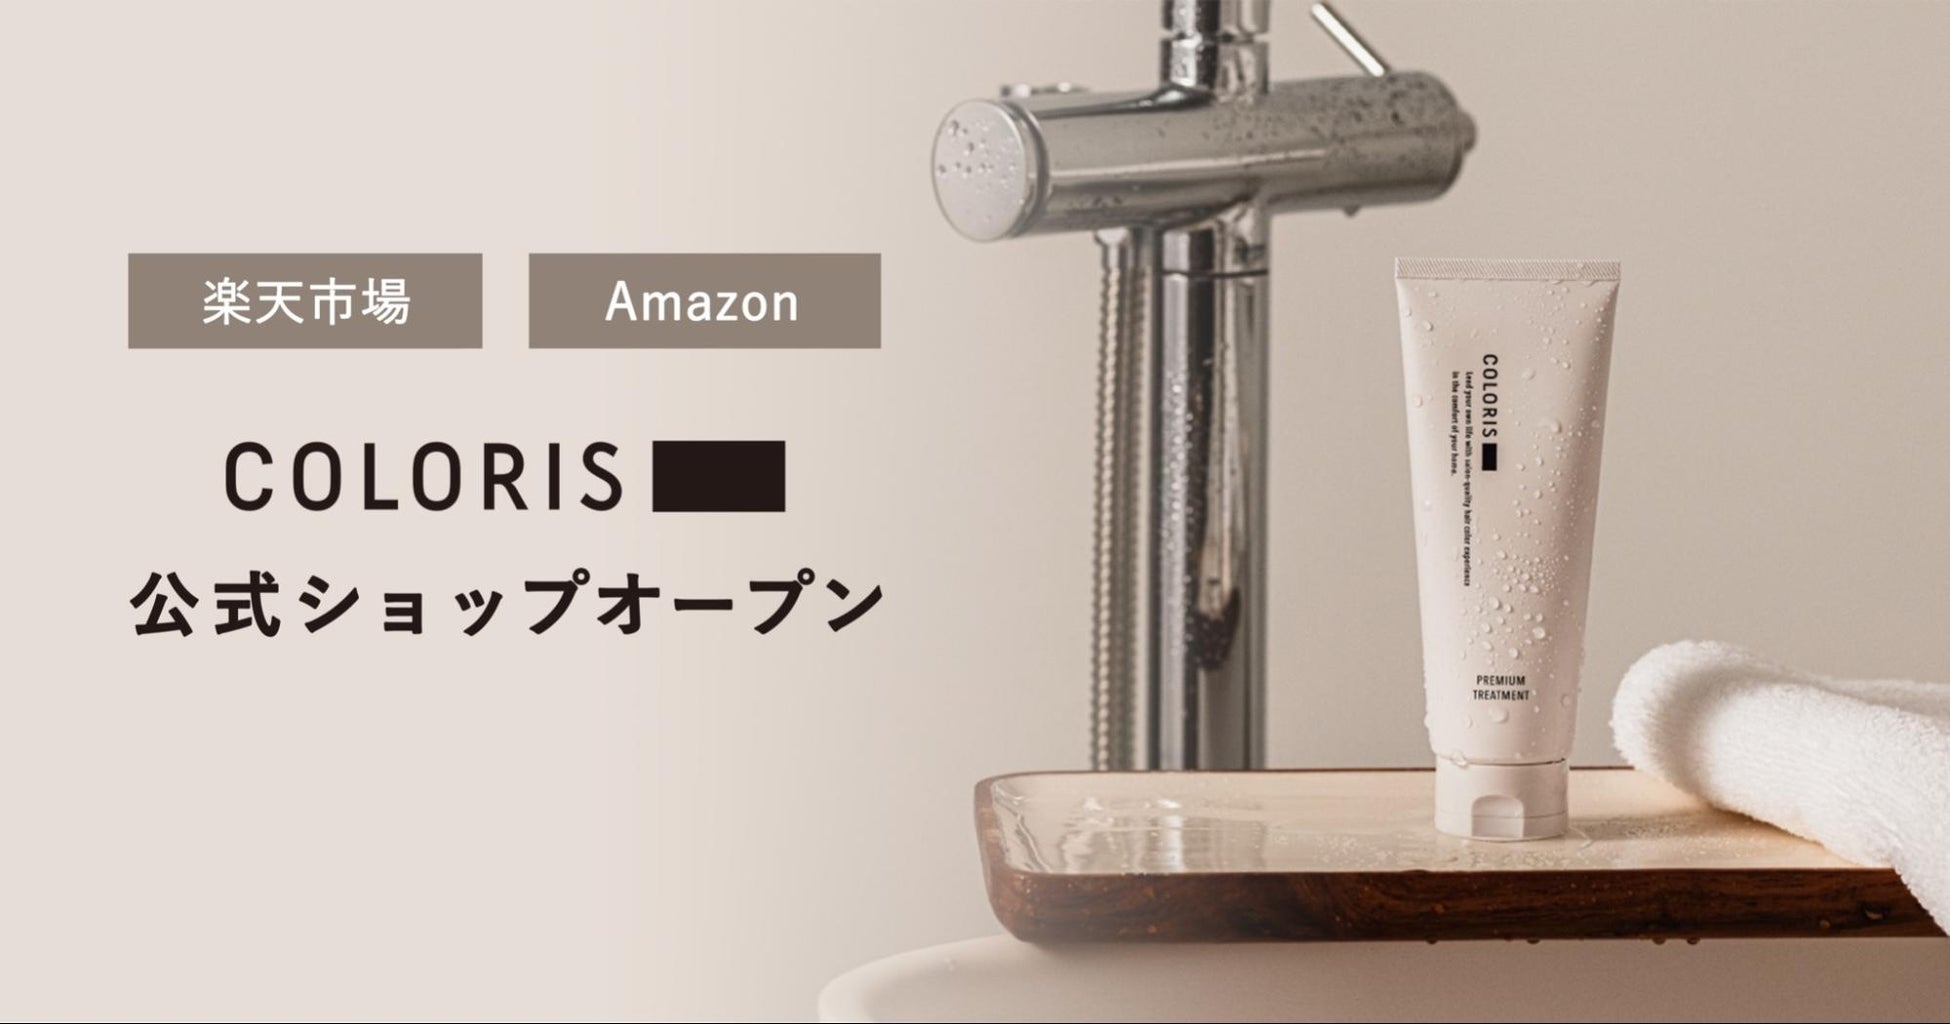 日本初のパーソナライズヘアカラーブランド「COLORIS」「楽天市場」「Amazon」に公式ショップをオープン